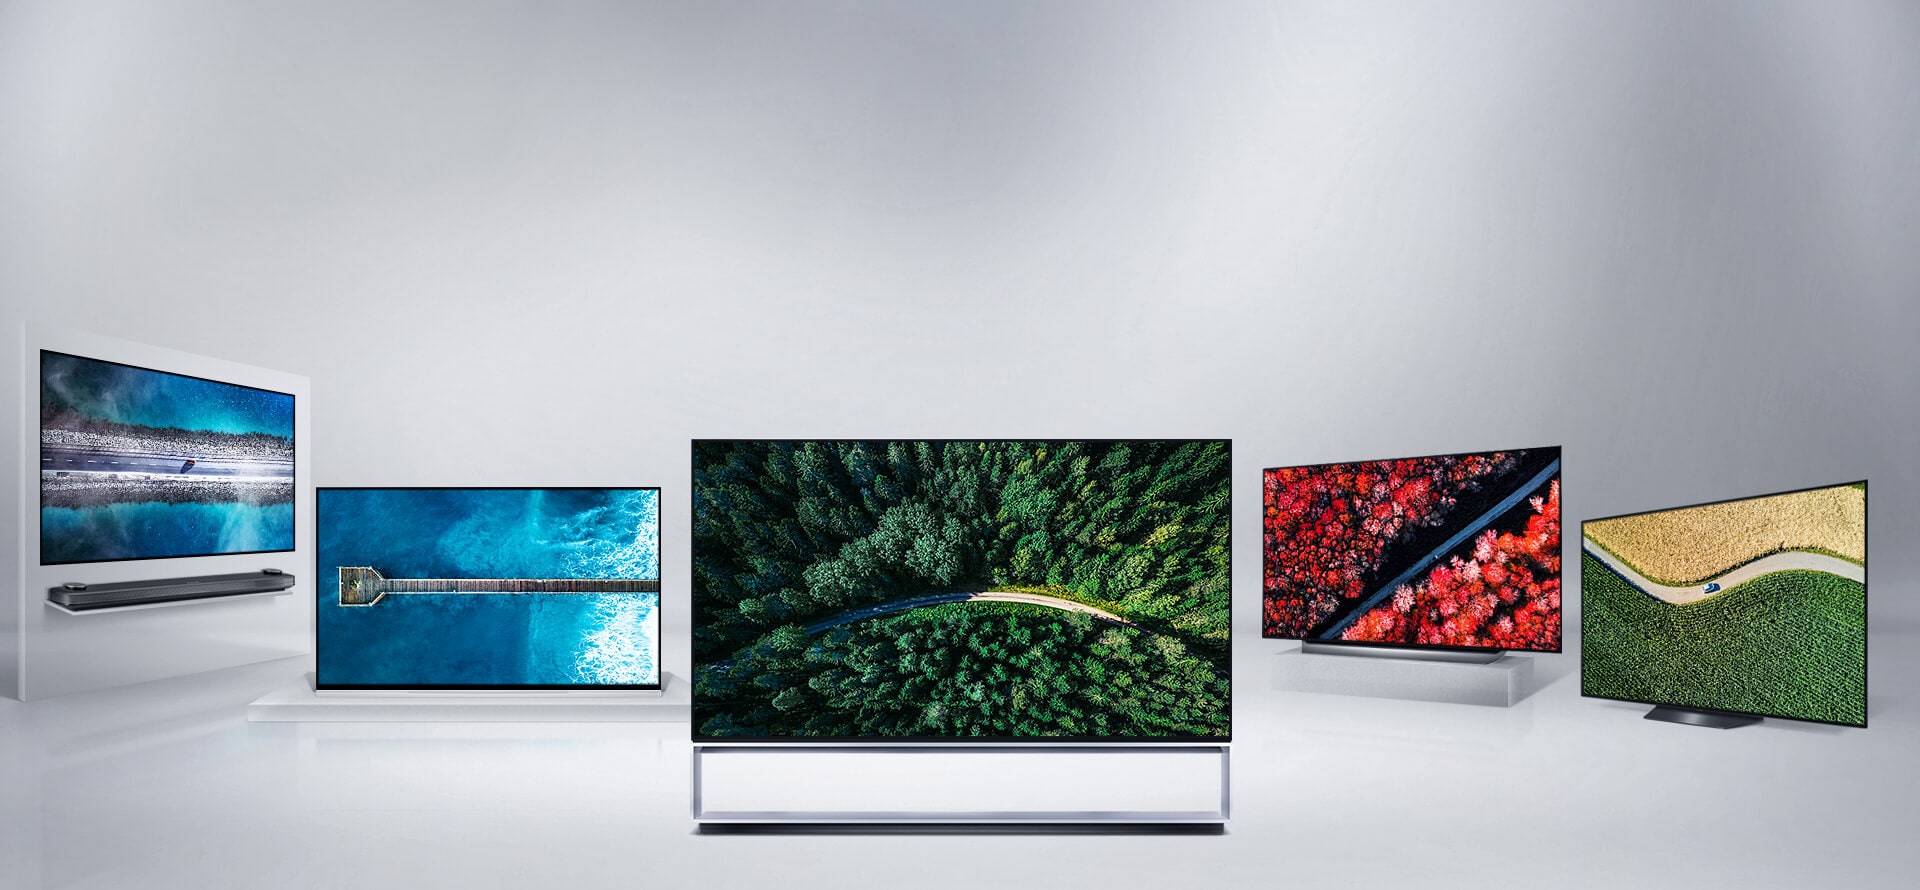 LG OLED TV AI ThinQ. Σειρά προϊόντων